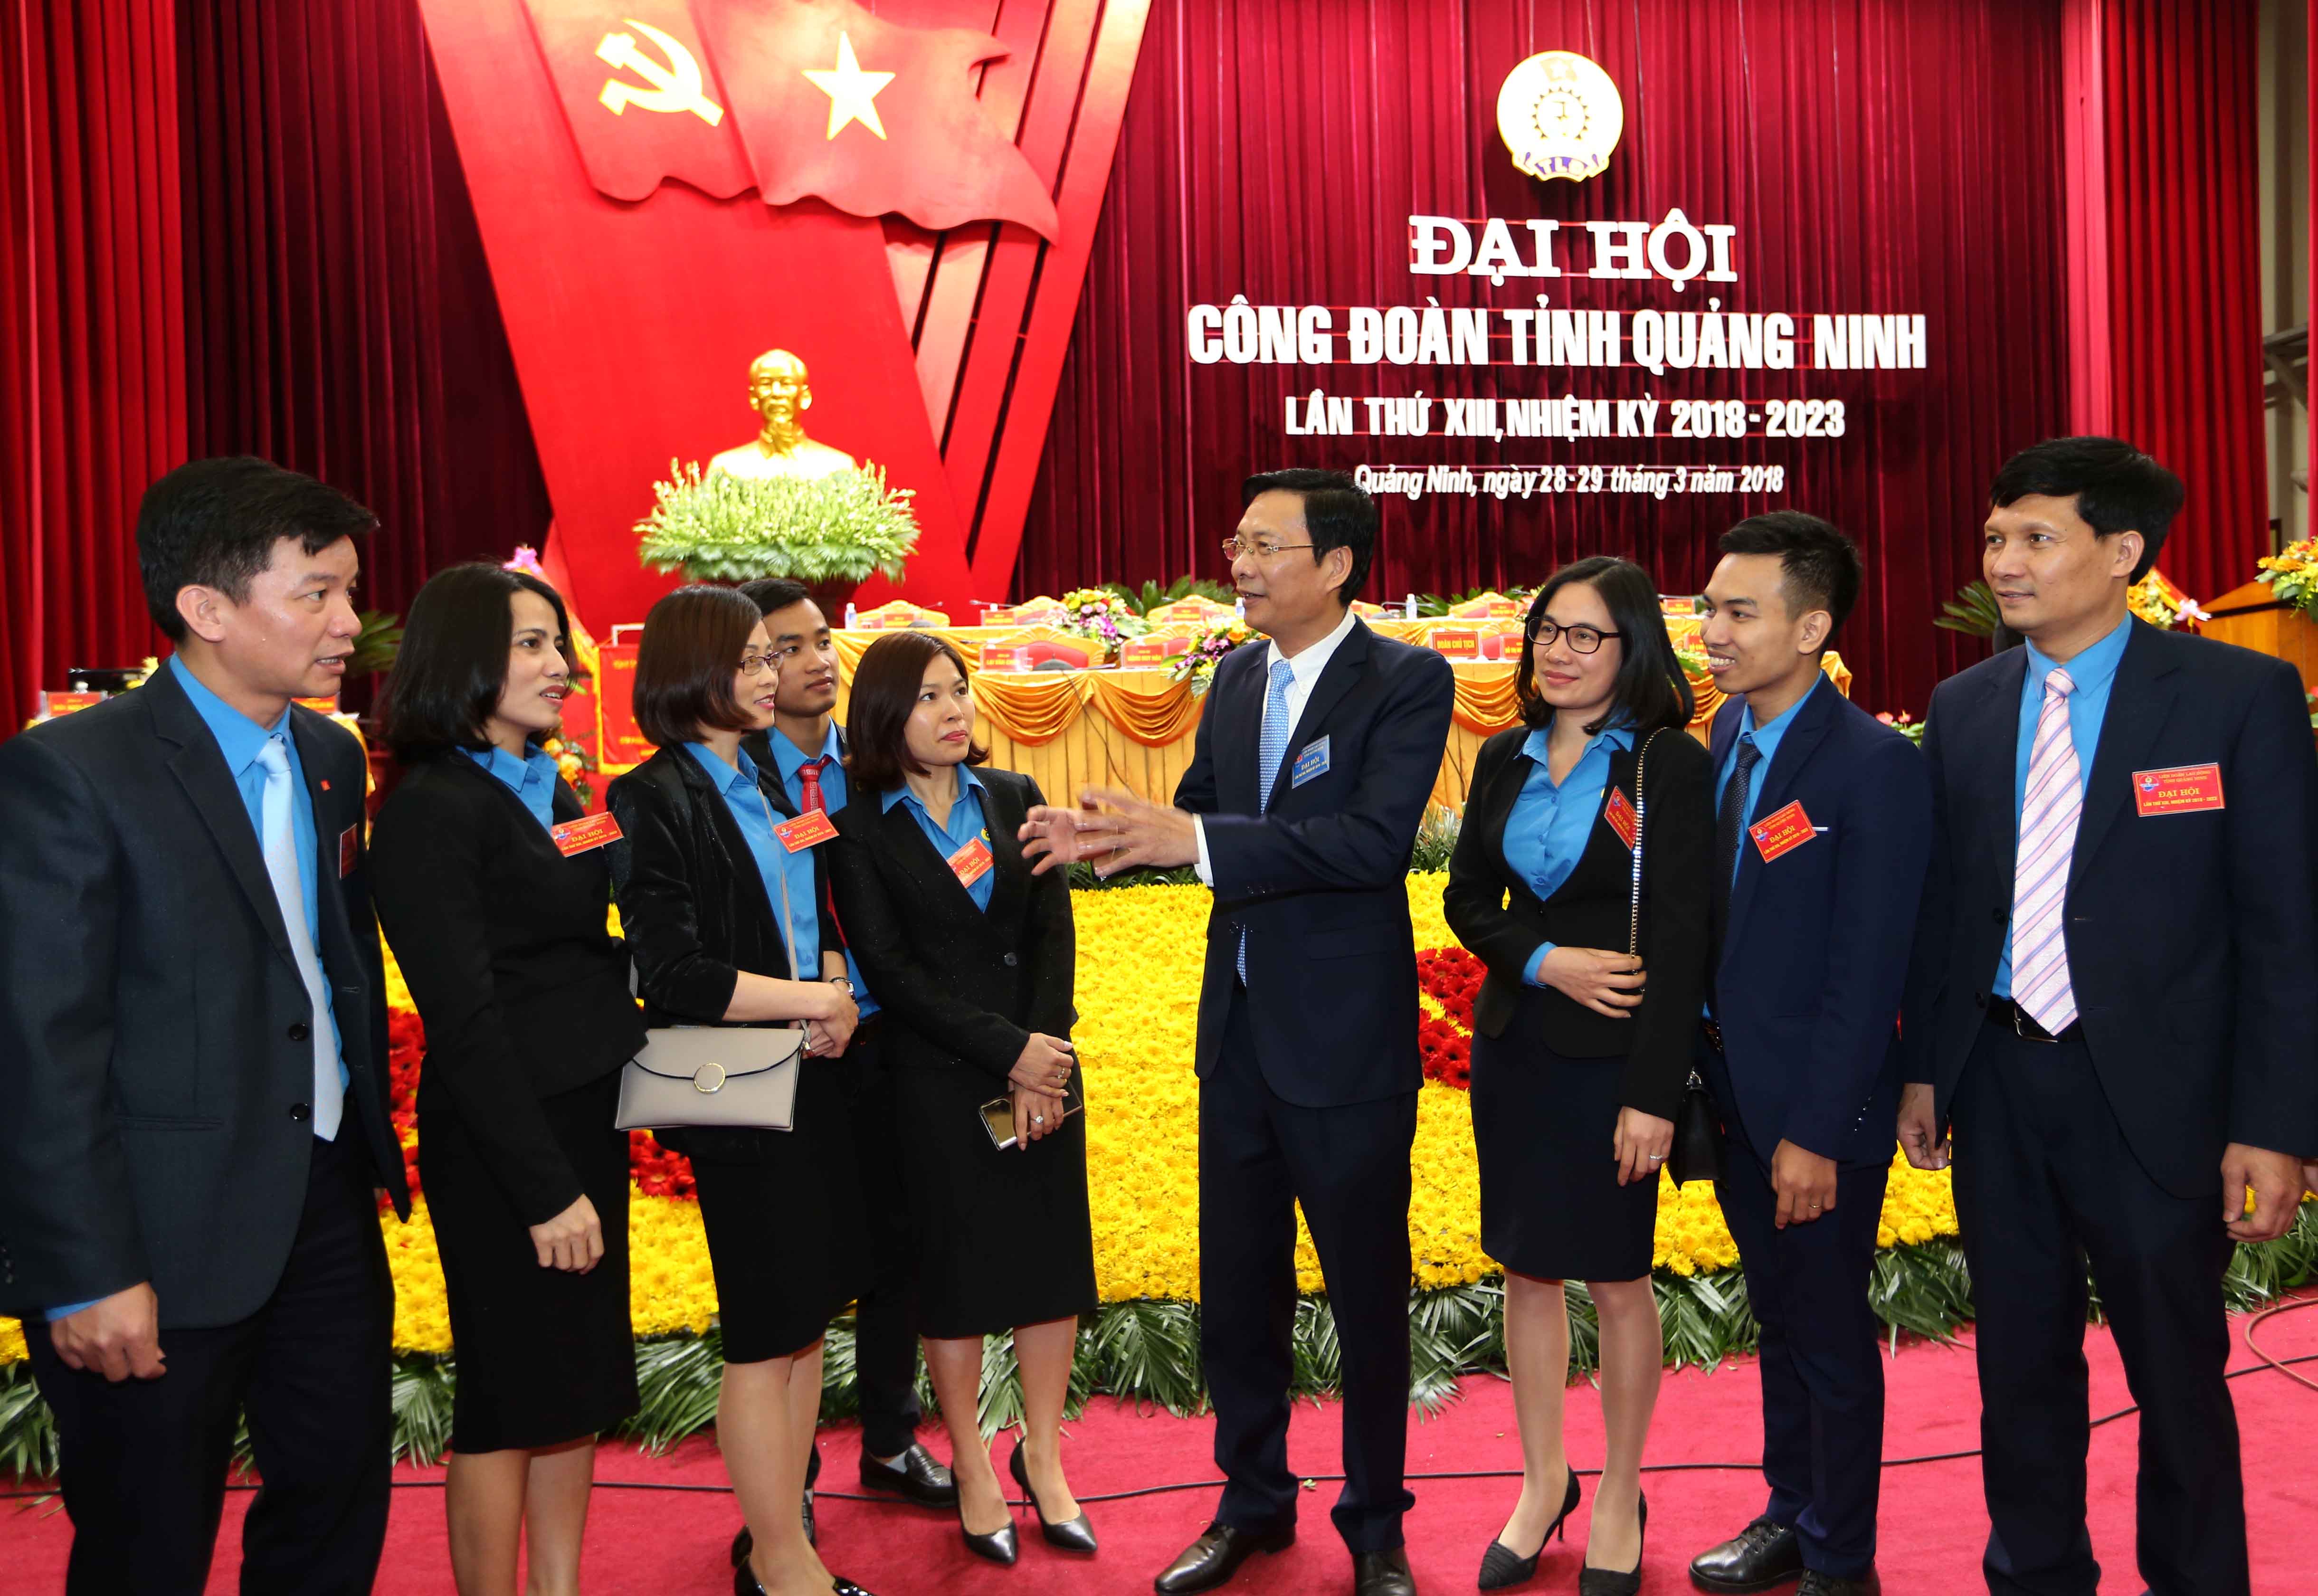 Bí thư Tỉnh ủy Nguyễn Văn Đọc  trò chuyện với CNLĐ, cán bộ công đoàn bên lề Đại hội.